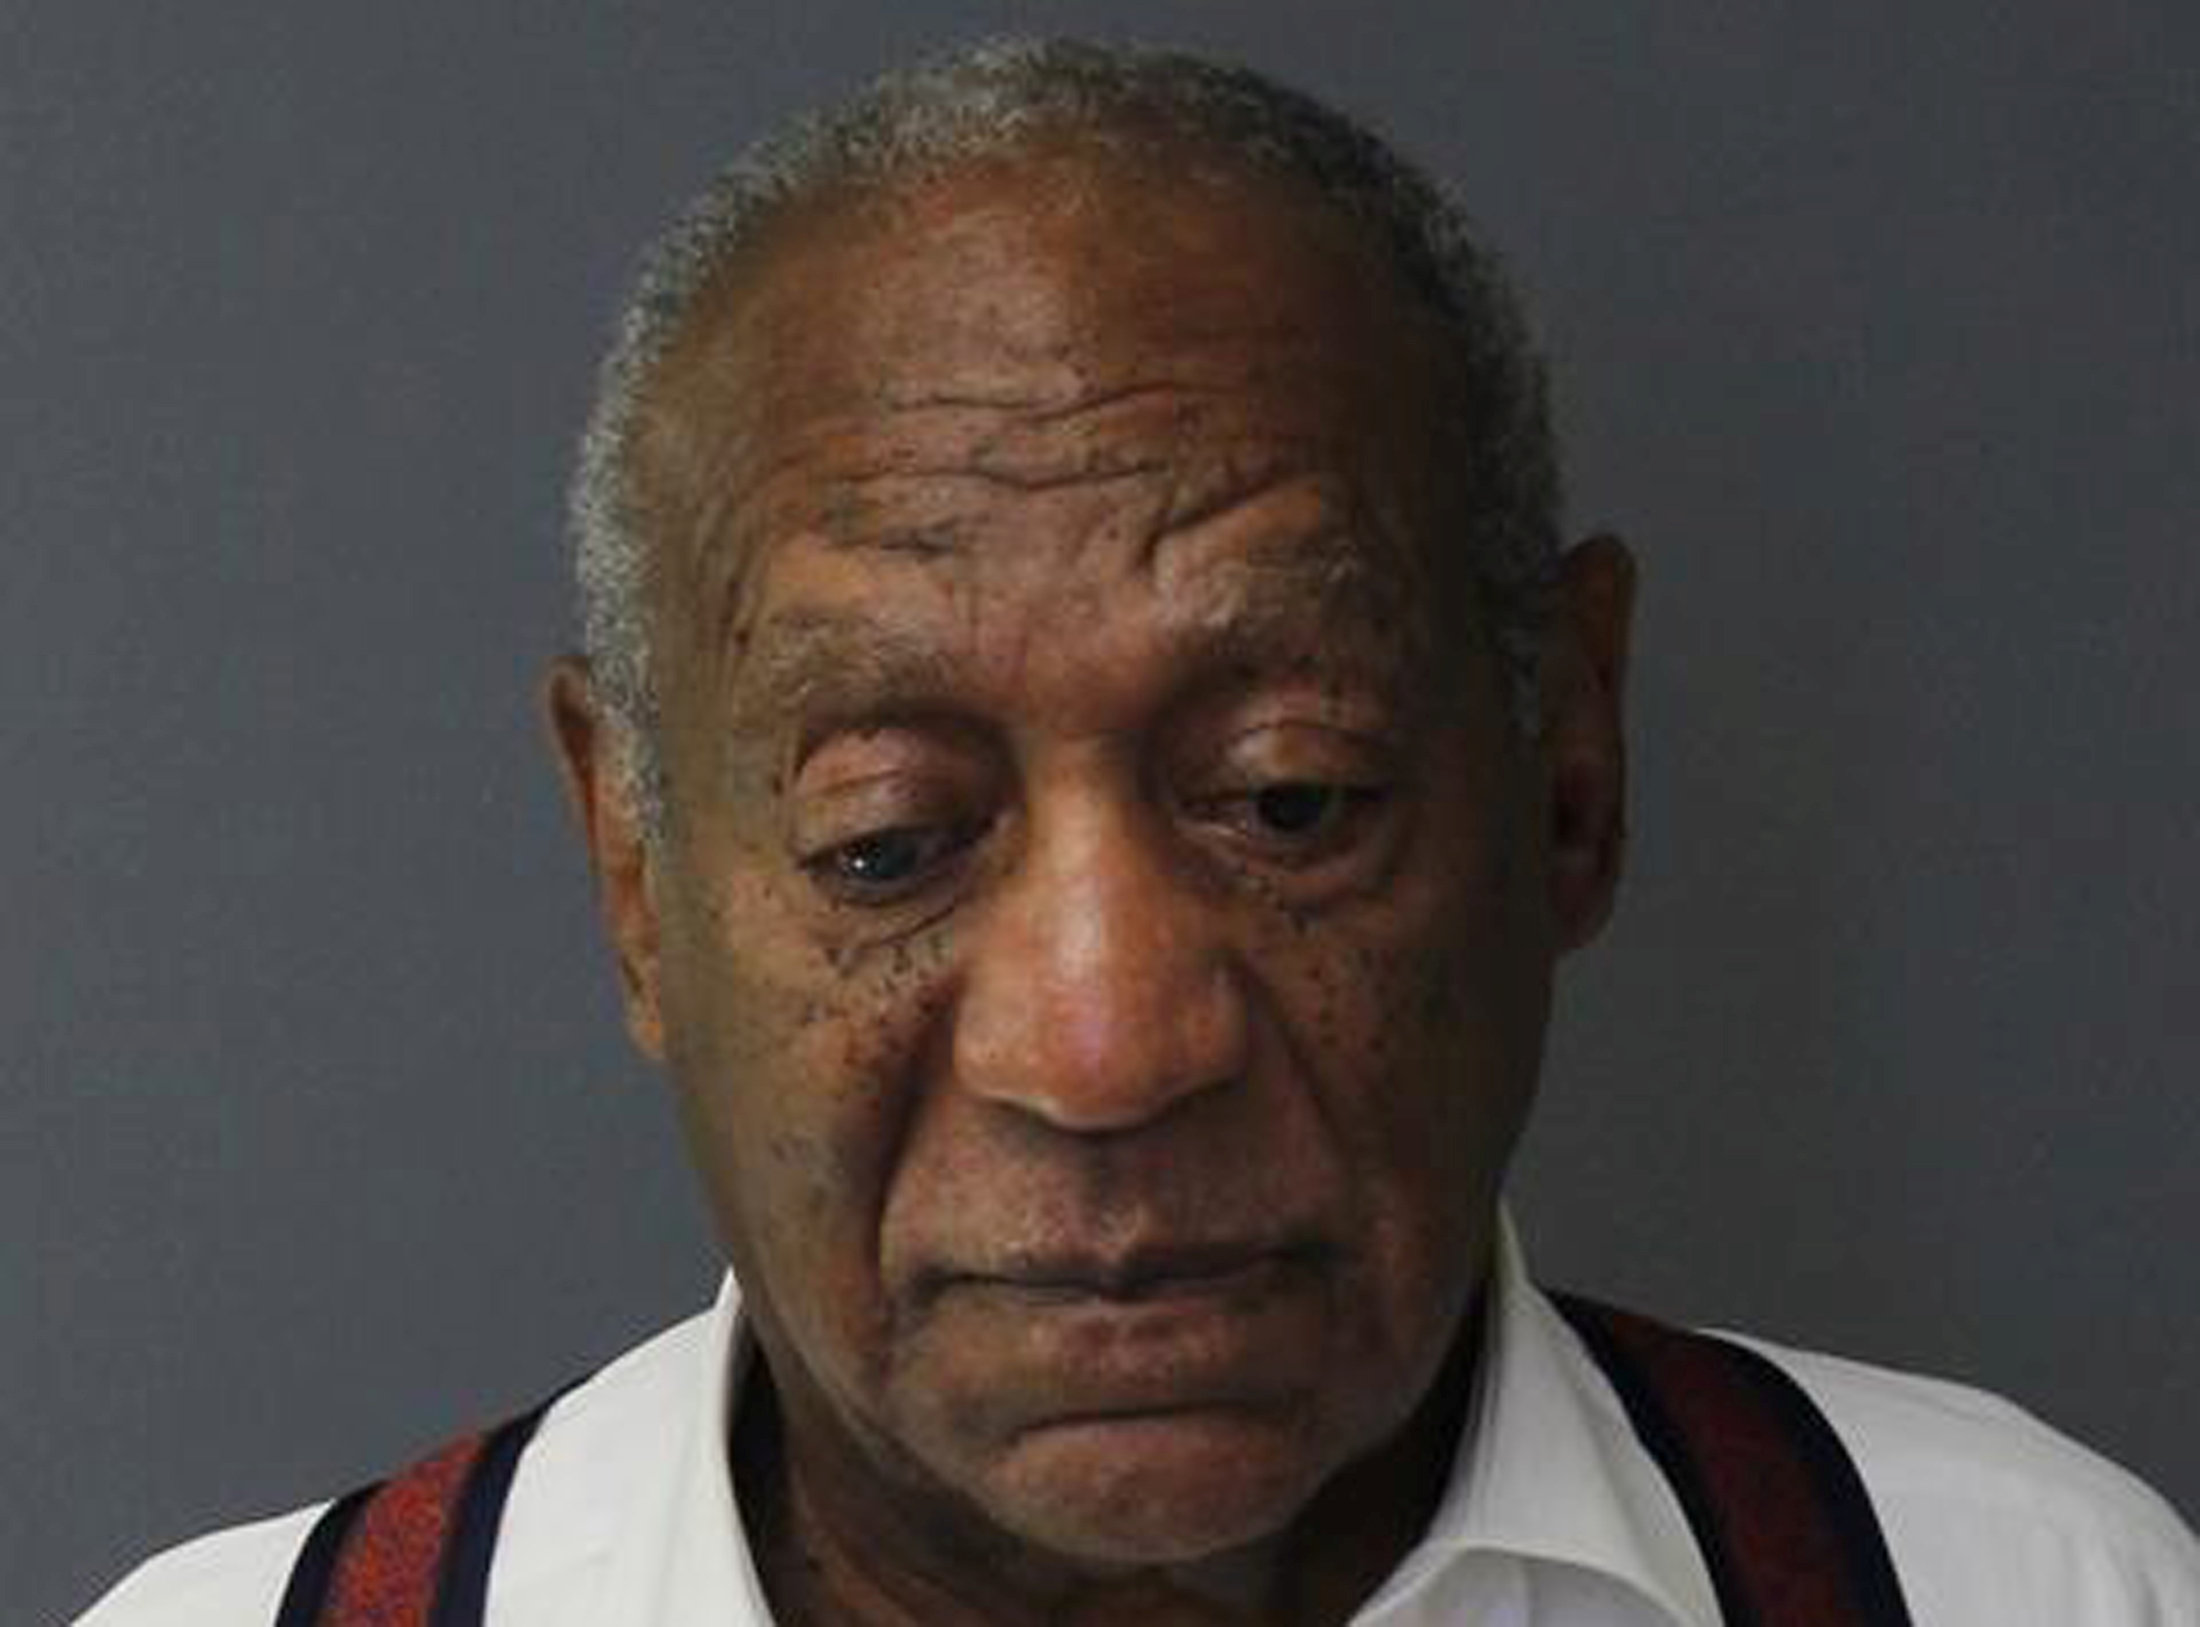 EN FOTOS: Esposado y serio, así fue el camino de Bill Cosby a prisión